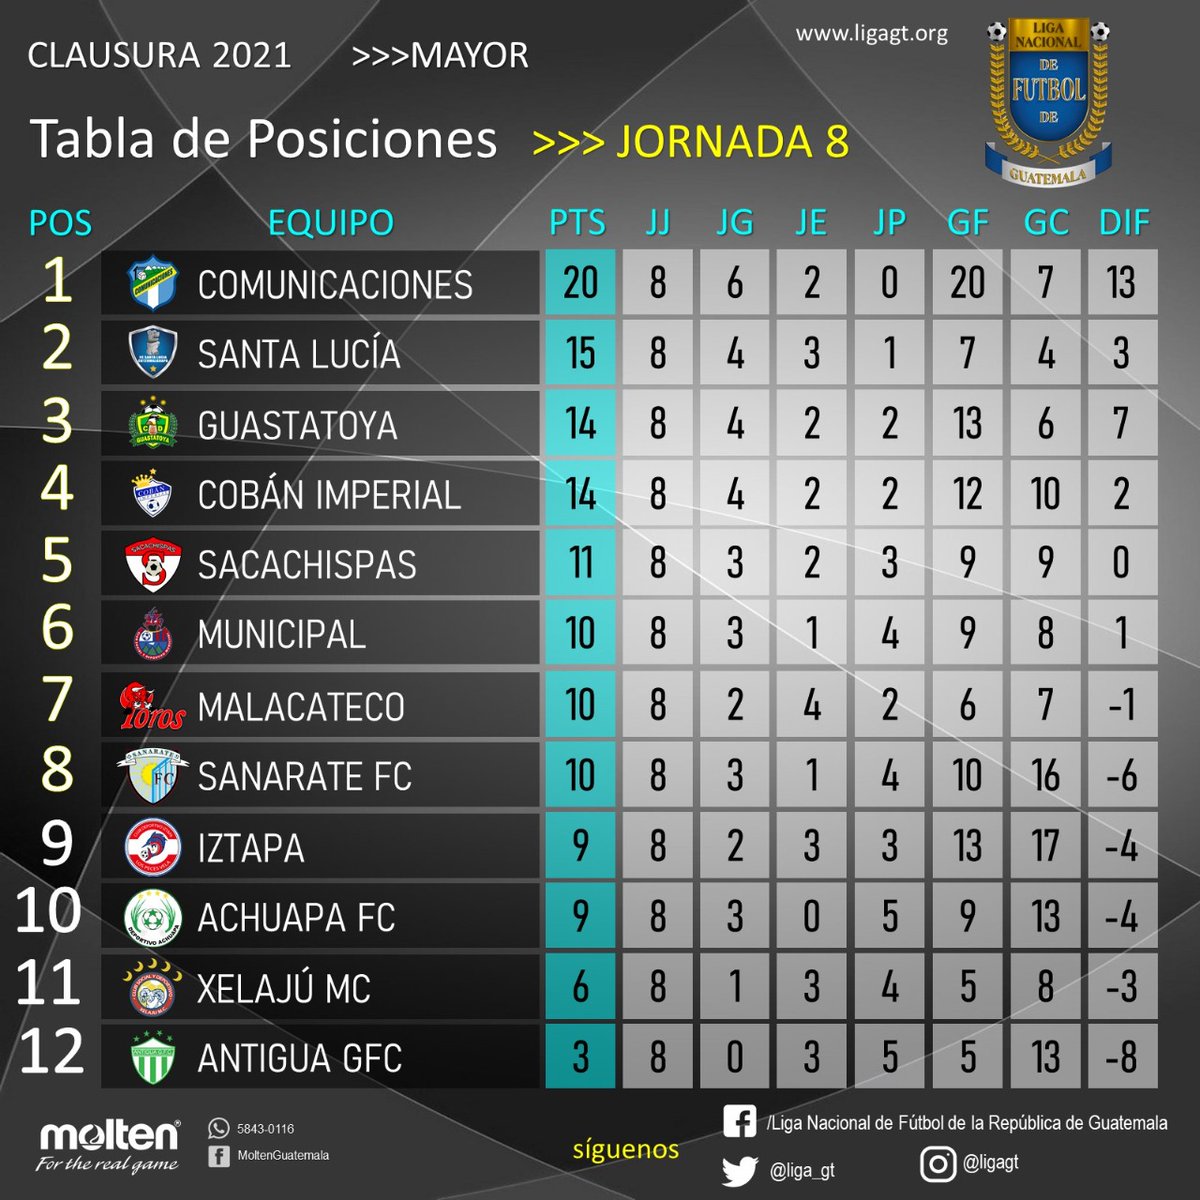 Twitter UNCAF / Oficial："Esta es la tabla de posiciones y la de Liga Nacional fútbol de Guatemala, tras jugadas 8 jornadas del Torneo Clausura 2021. https://t.co/XtikYZYgR4" / Twitter